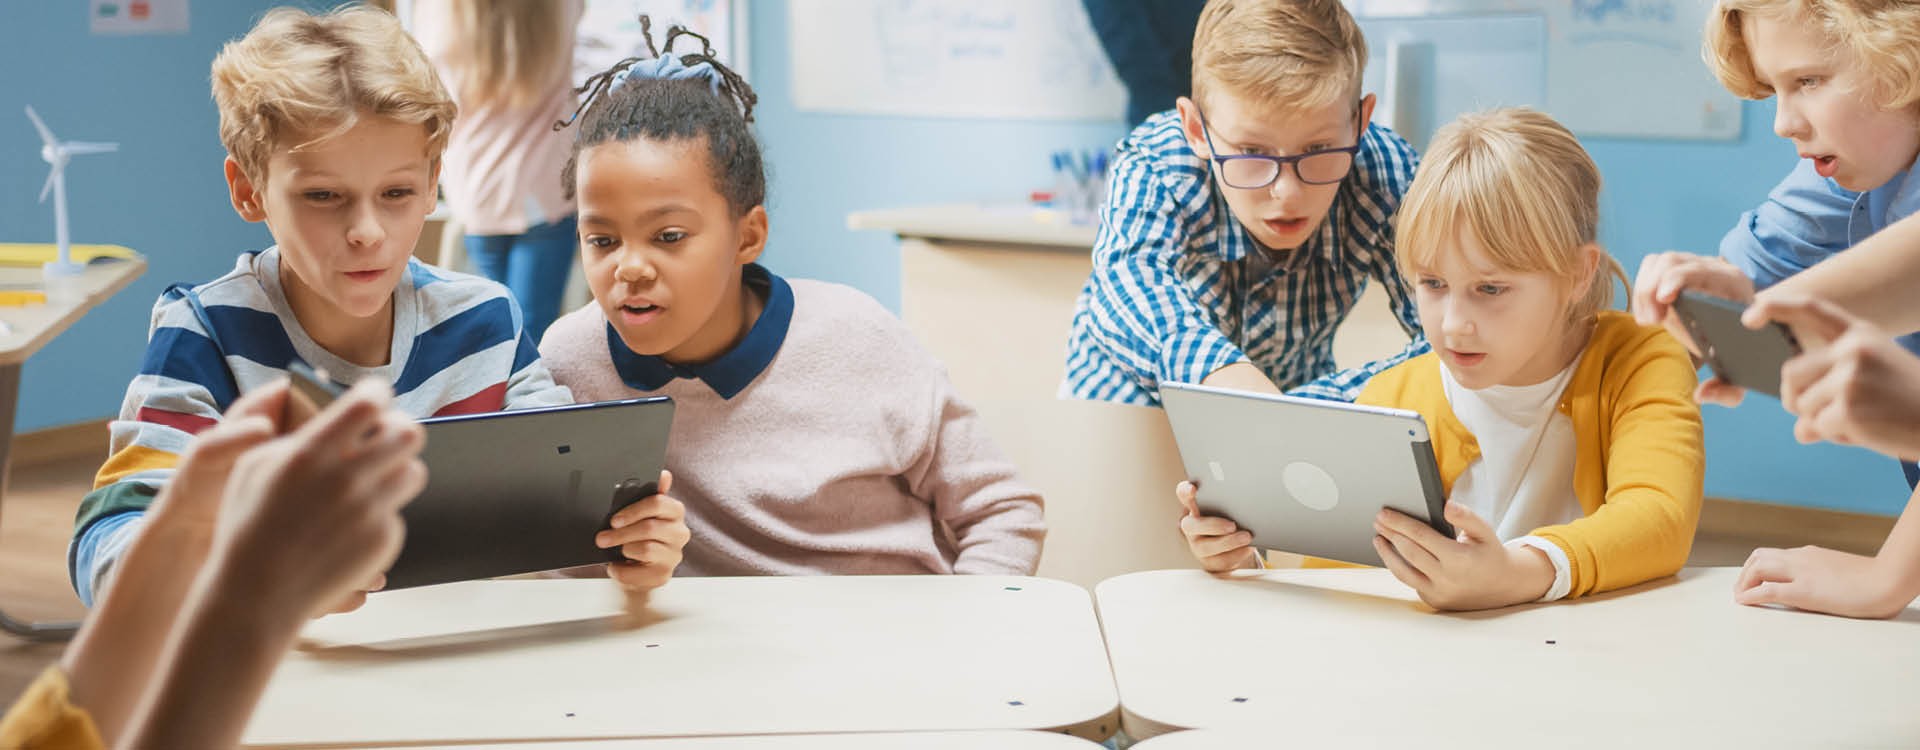 Kinder in einem Klassenraum nutzen unterschiedliche digitale Endgeräte.